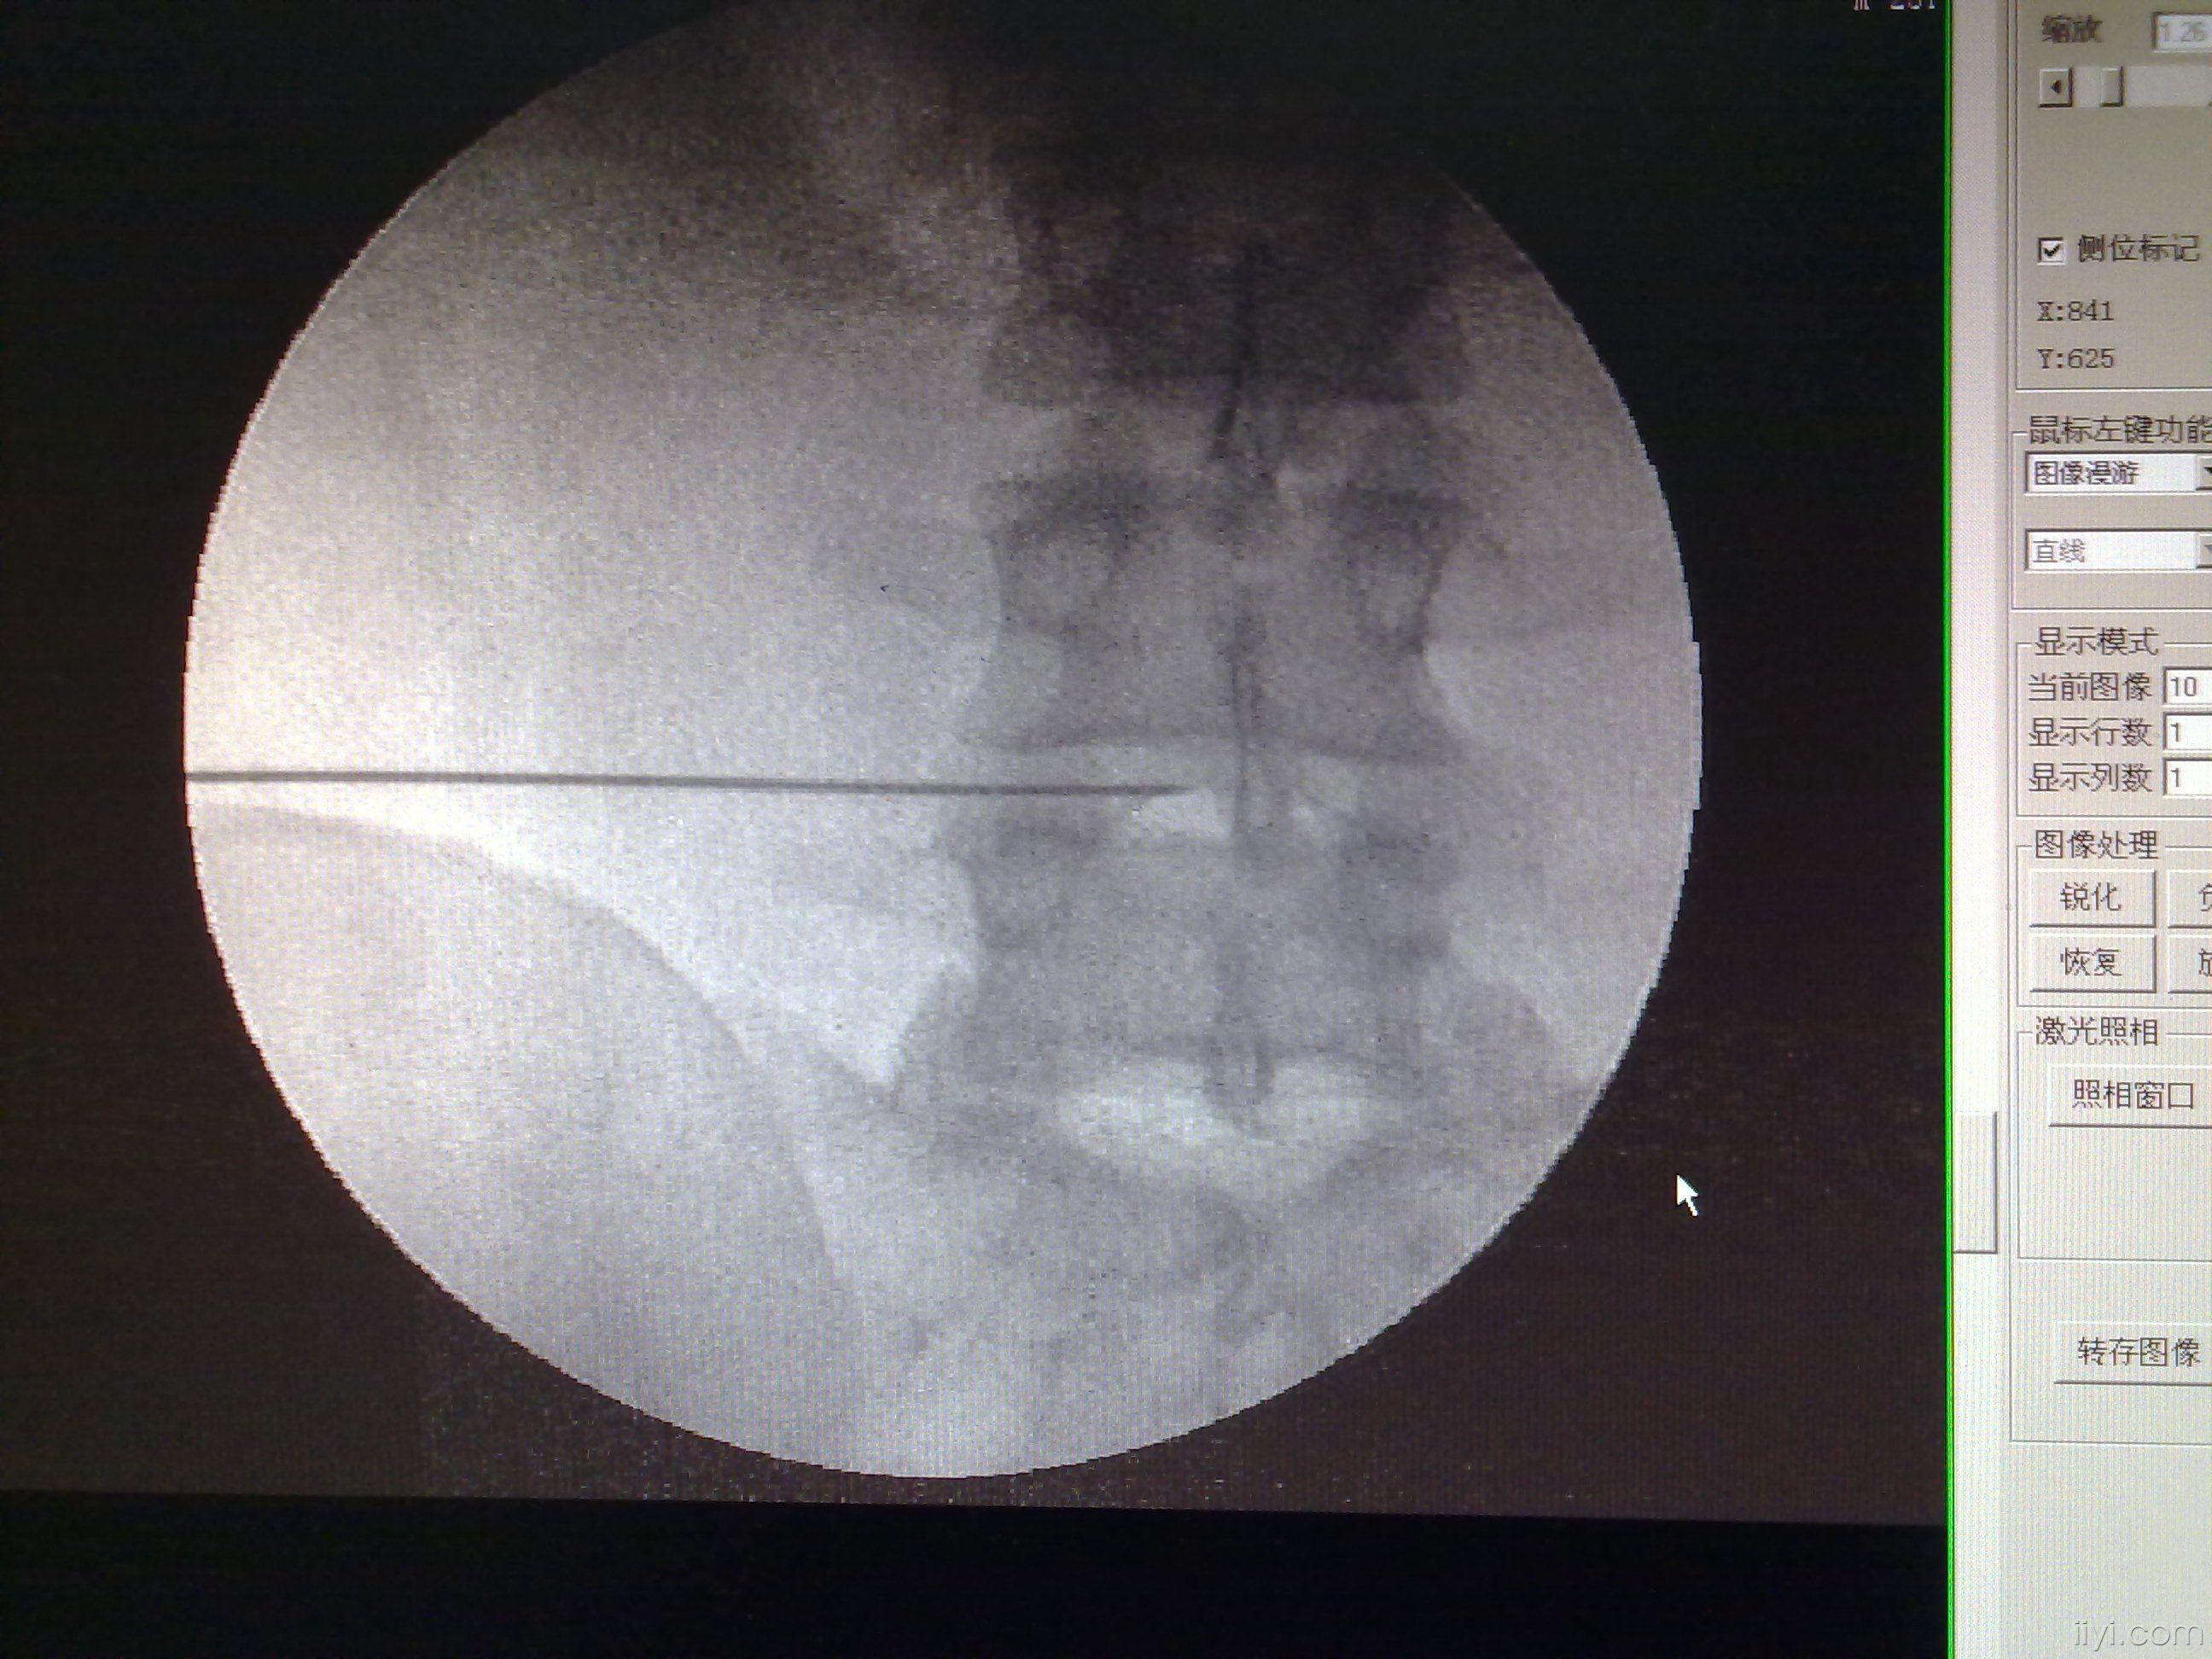 射频 治疗腰椎间盘突出症 过程 真实图片